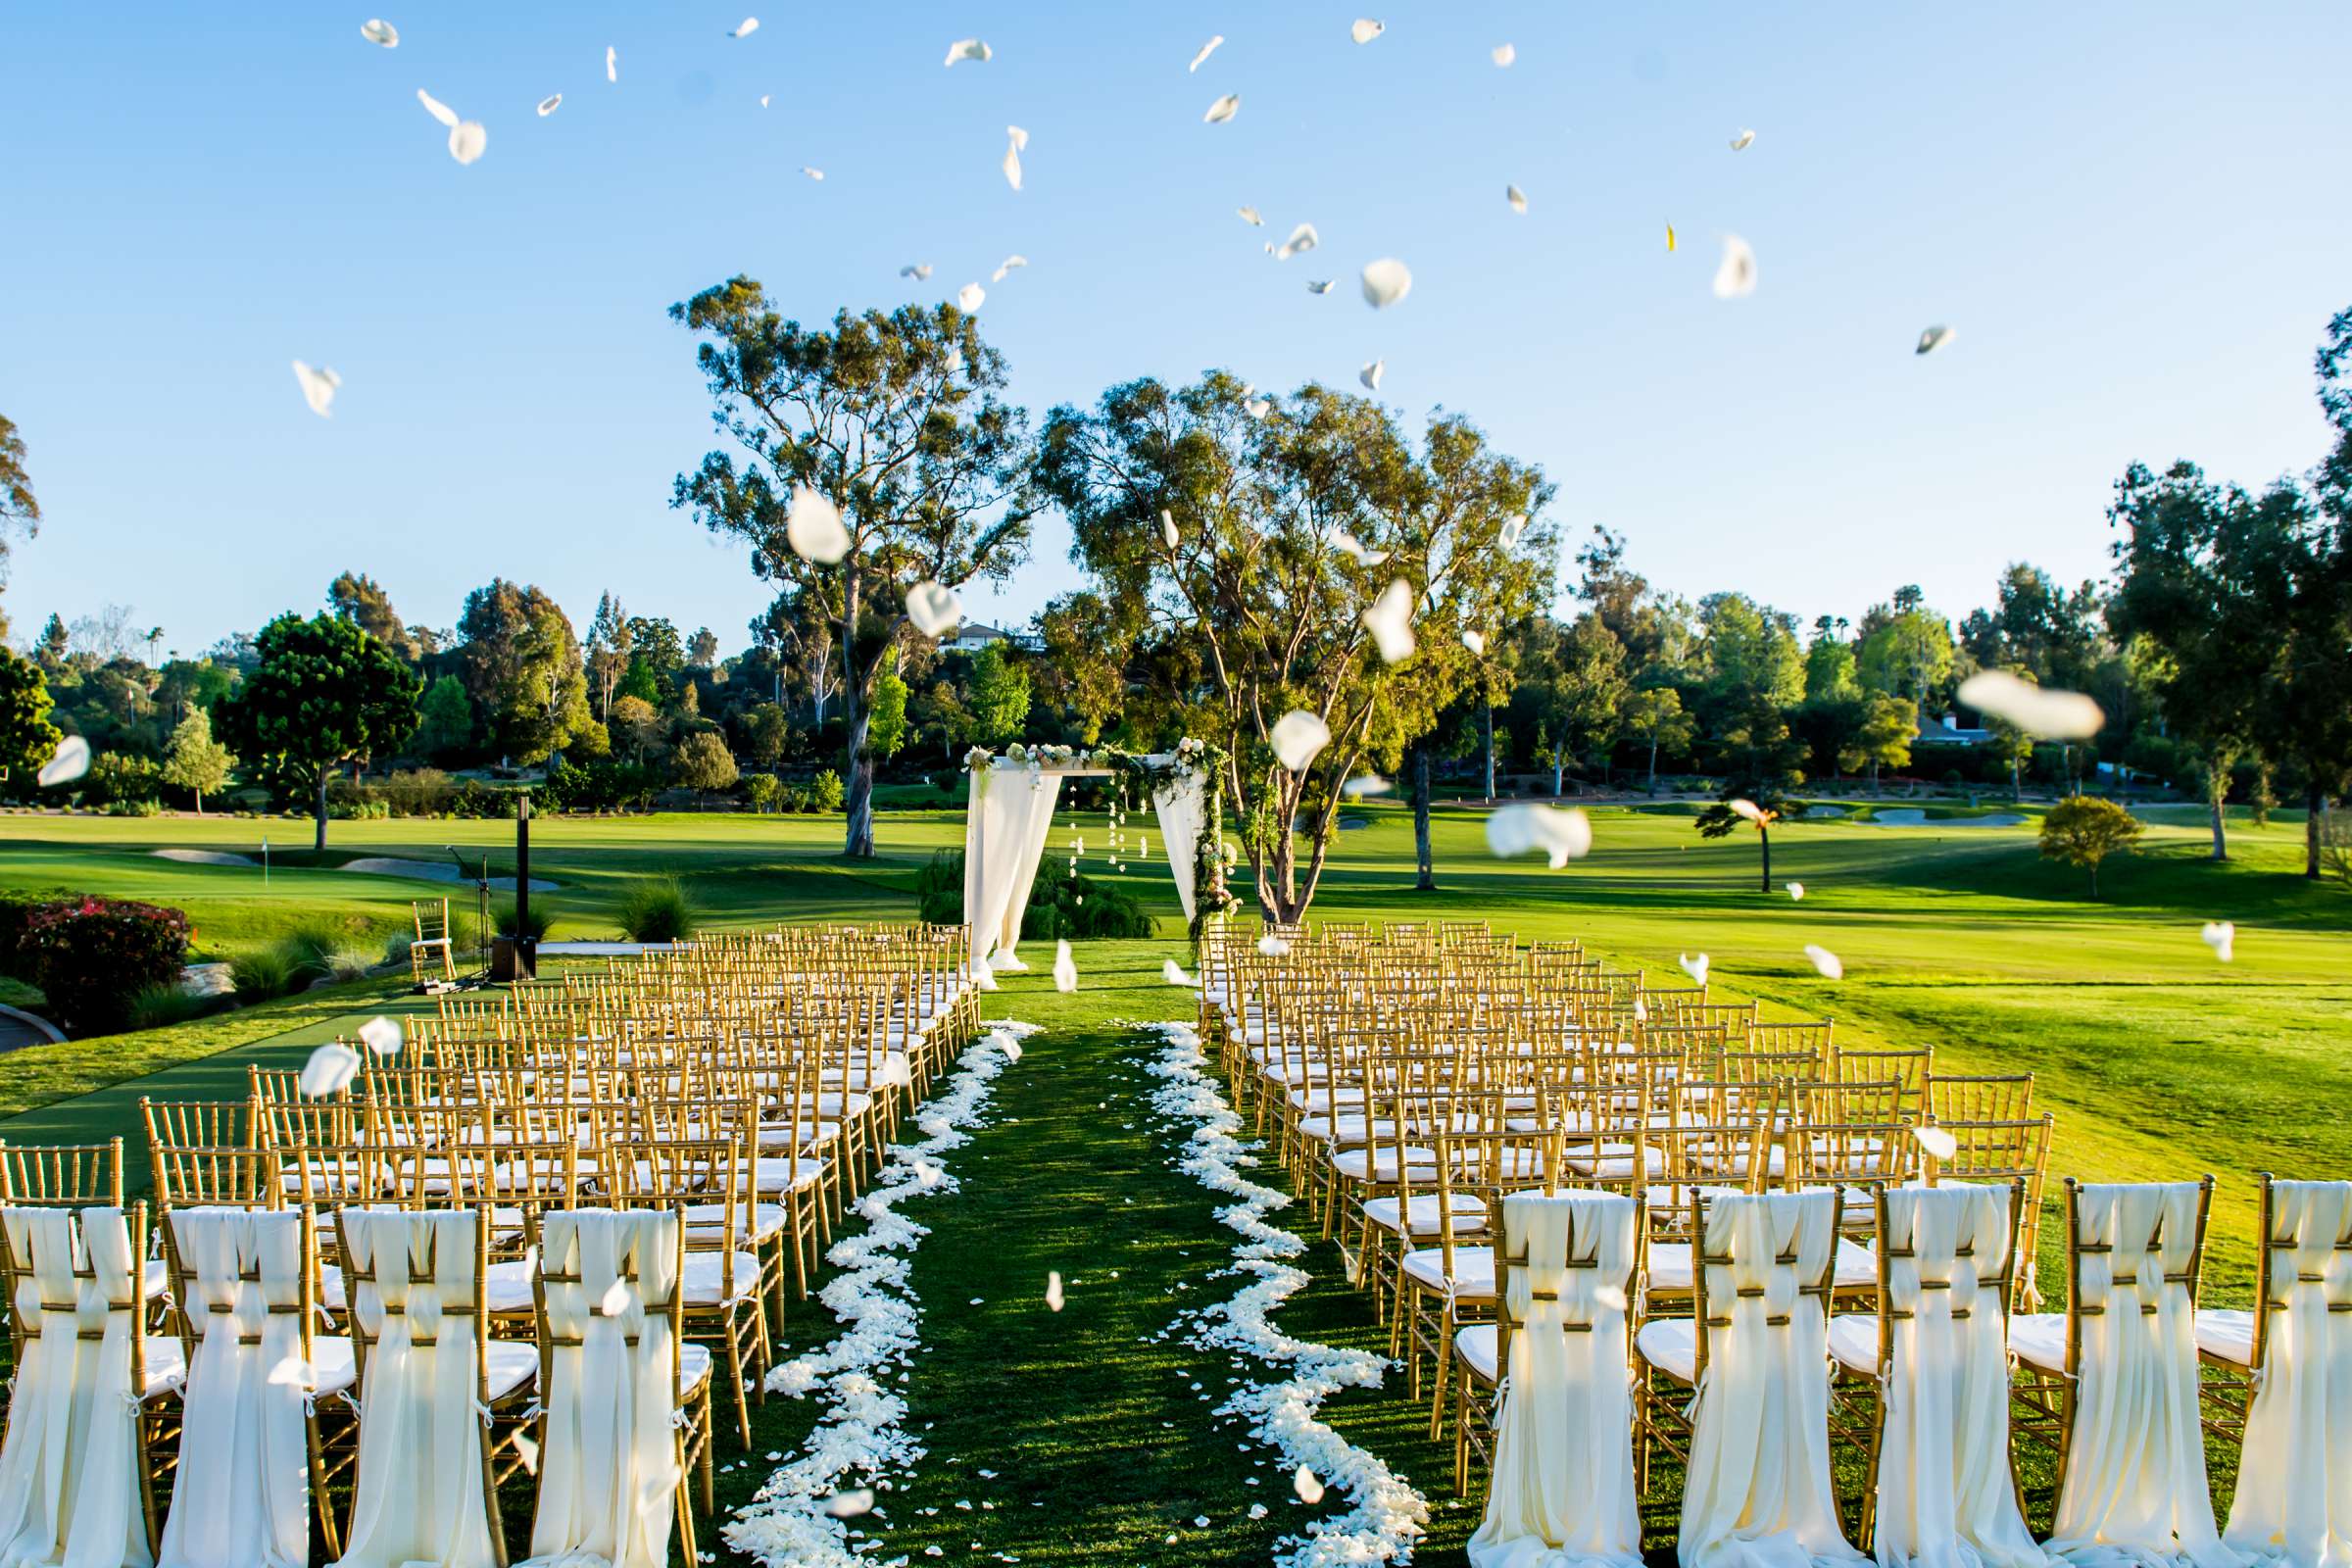 Rancho Santa Fe Golf Club Wedding coordinated by Monarch Weddings, Carolynn and Jon Wedding Photo #141 by True Photography